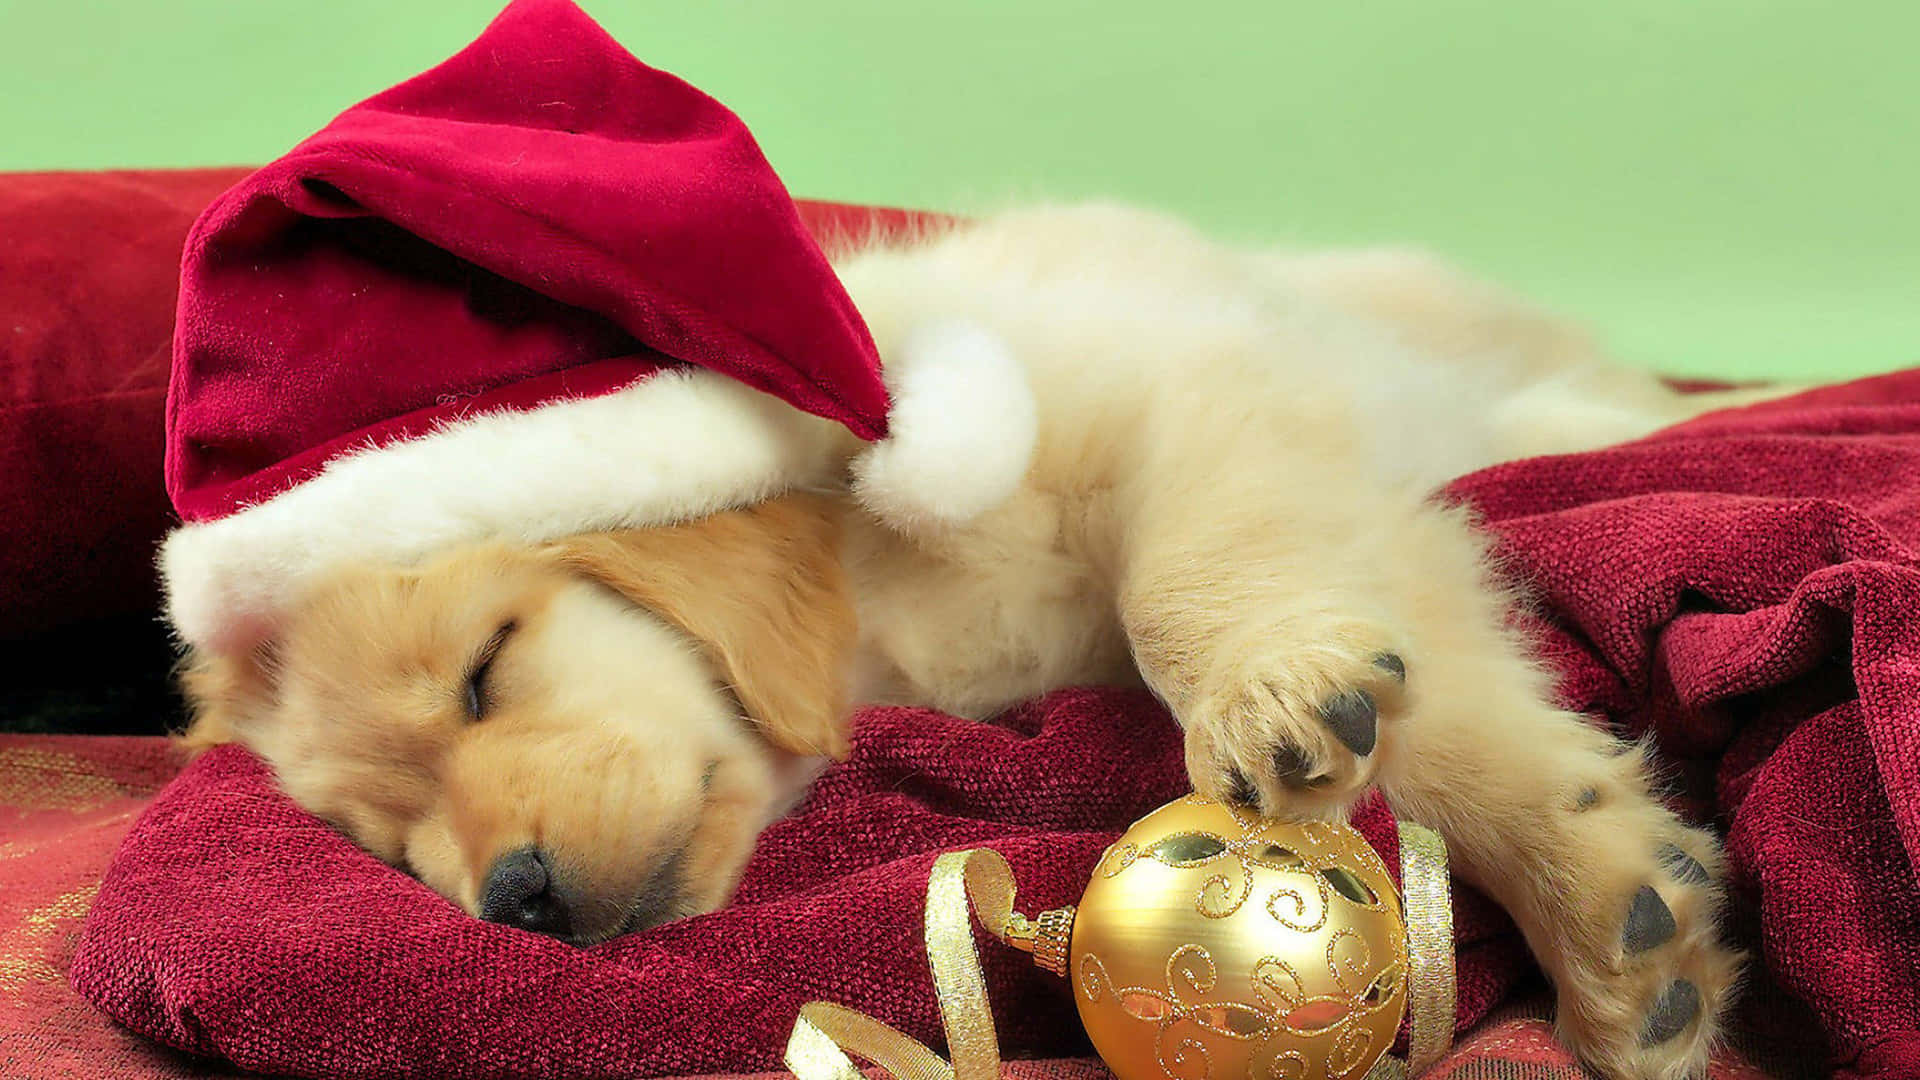 A ball of golden fur - A Golden Retriever puppy Wallpaper